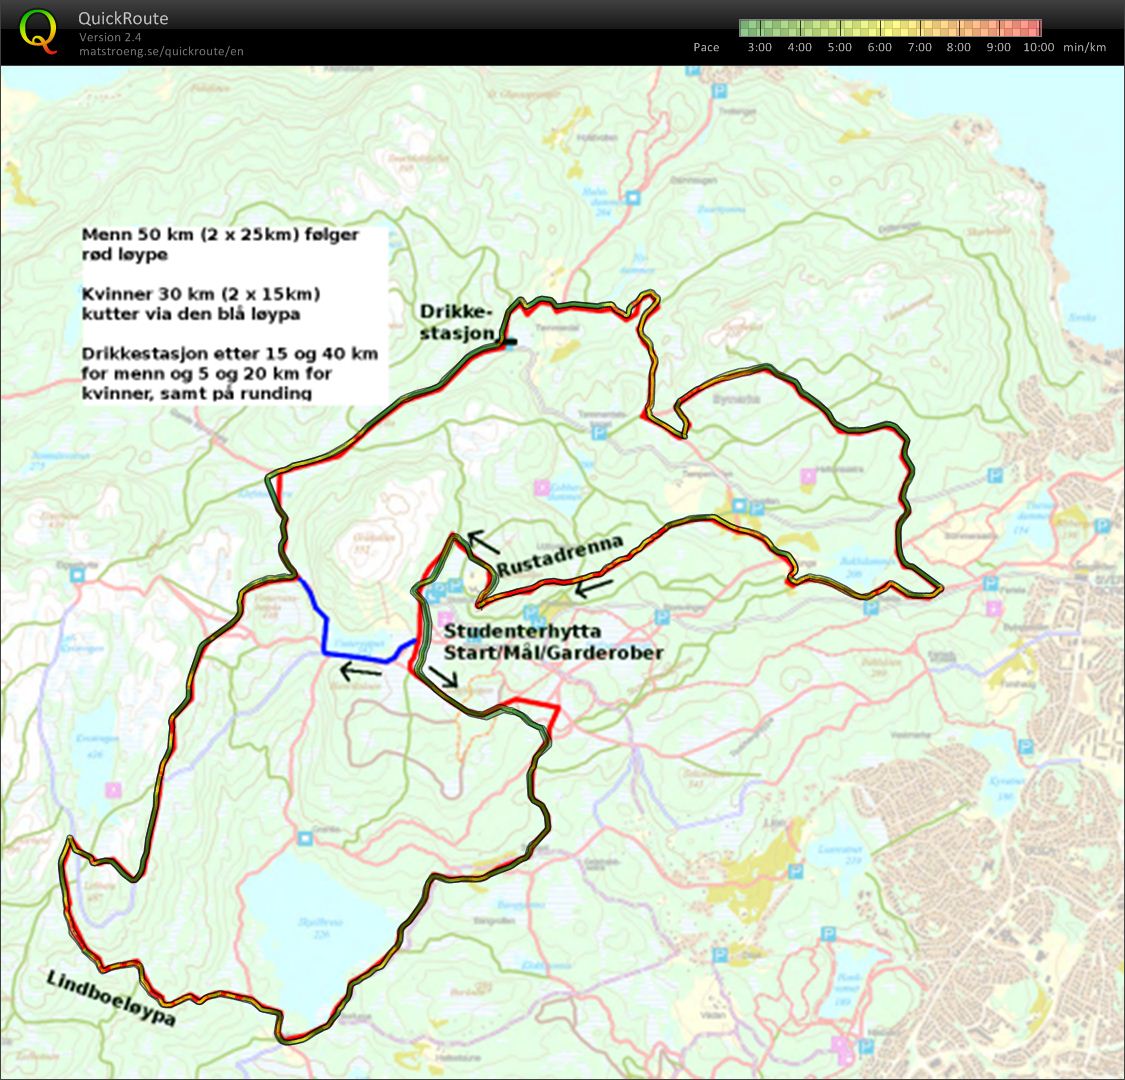 SL 50 km klassisk enkeltstart (23-02-2013)